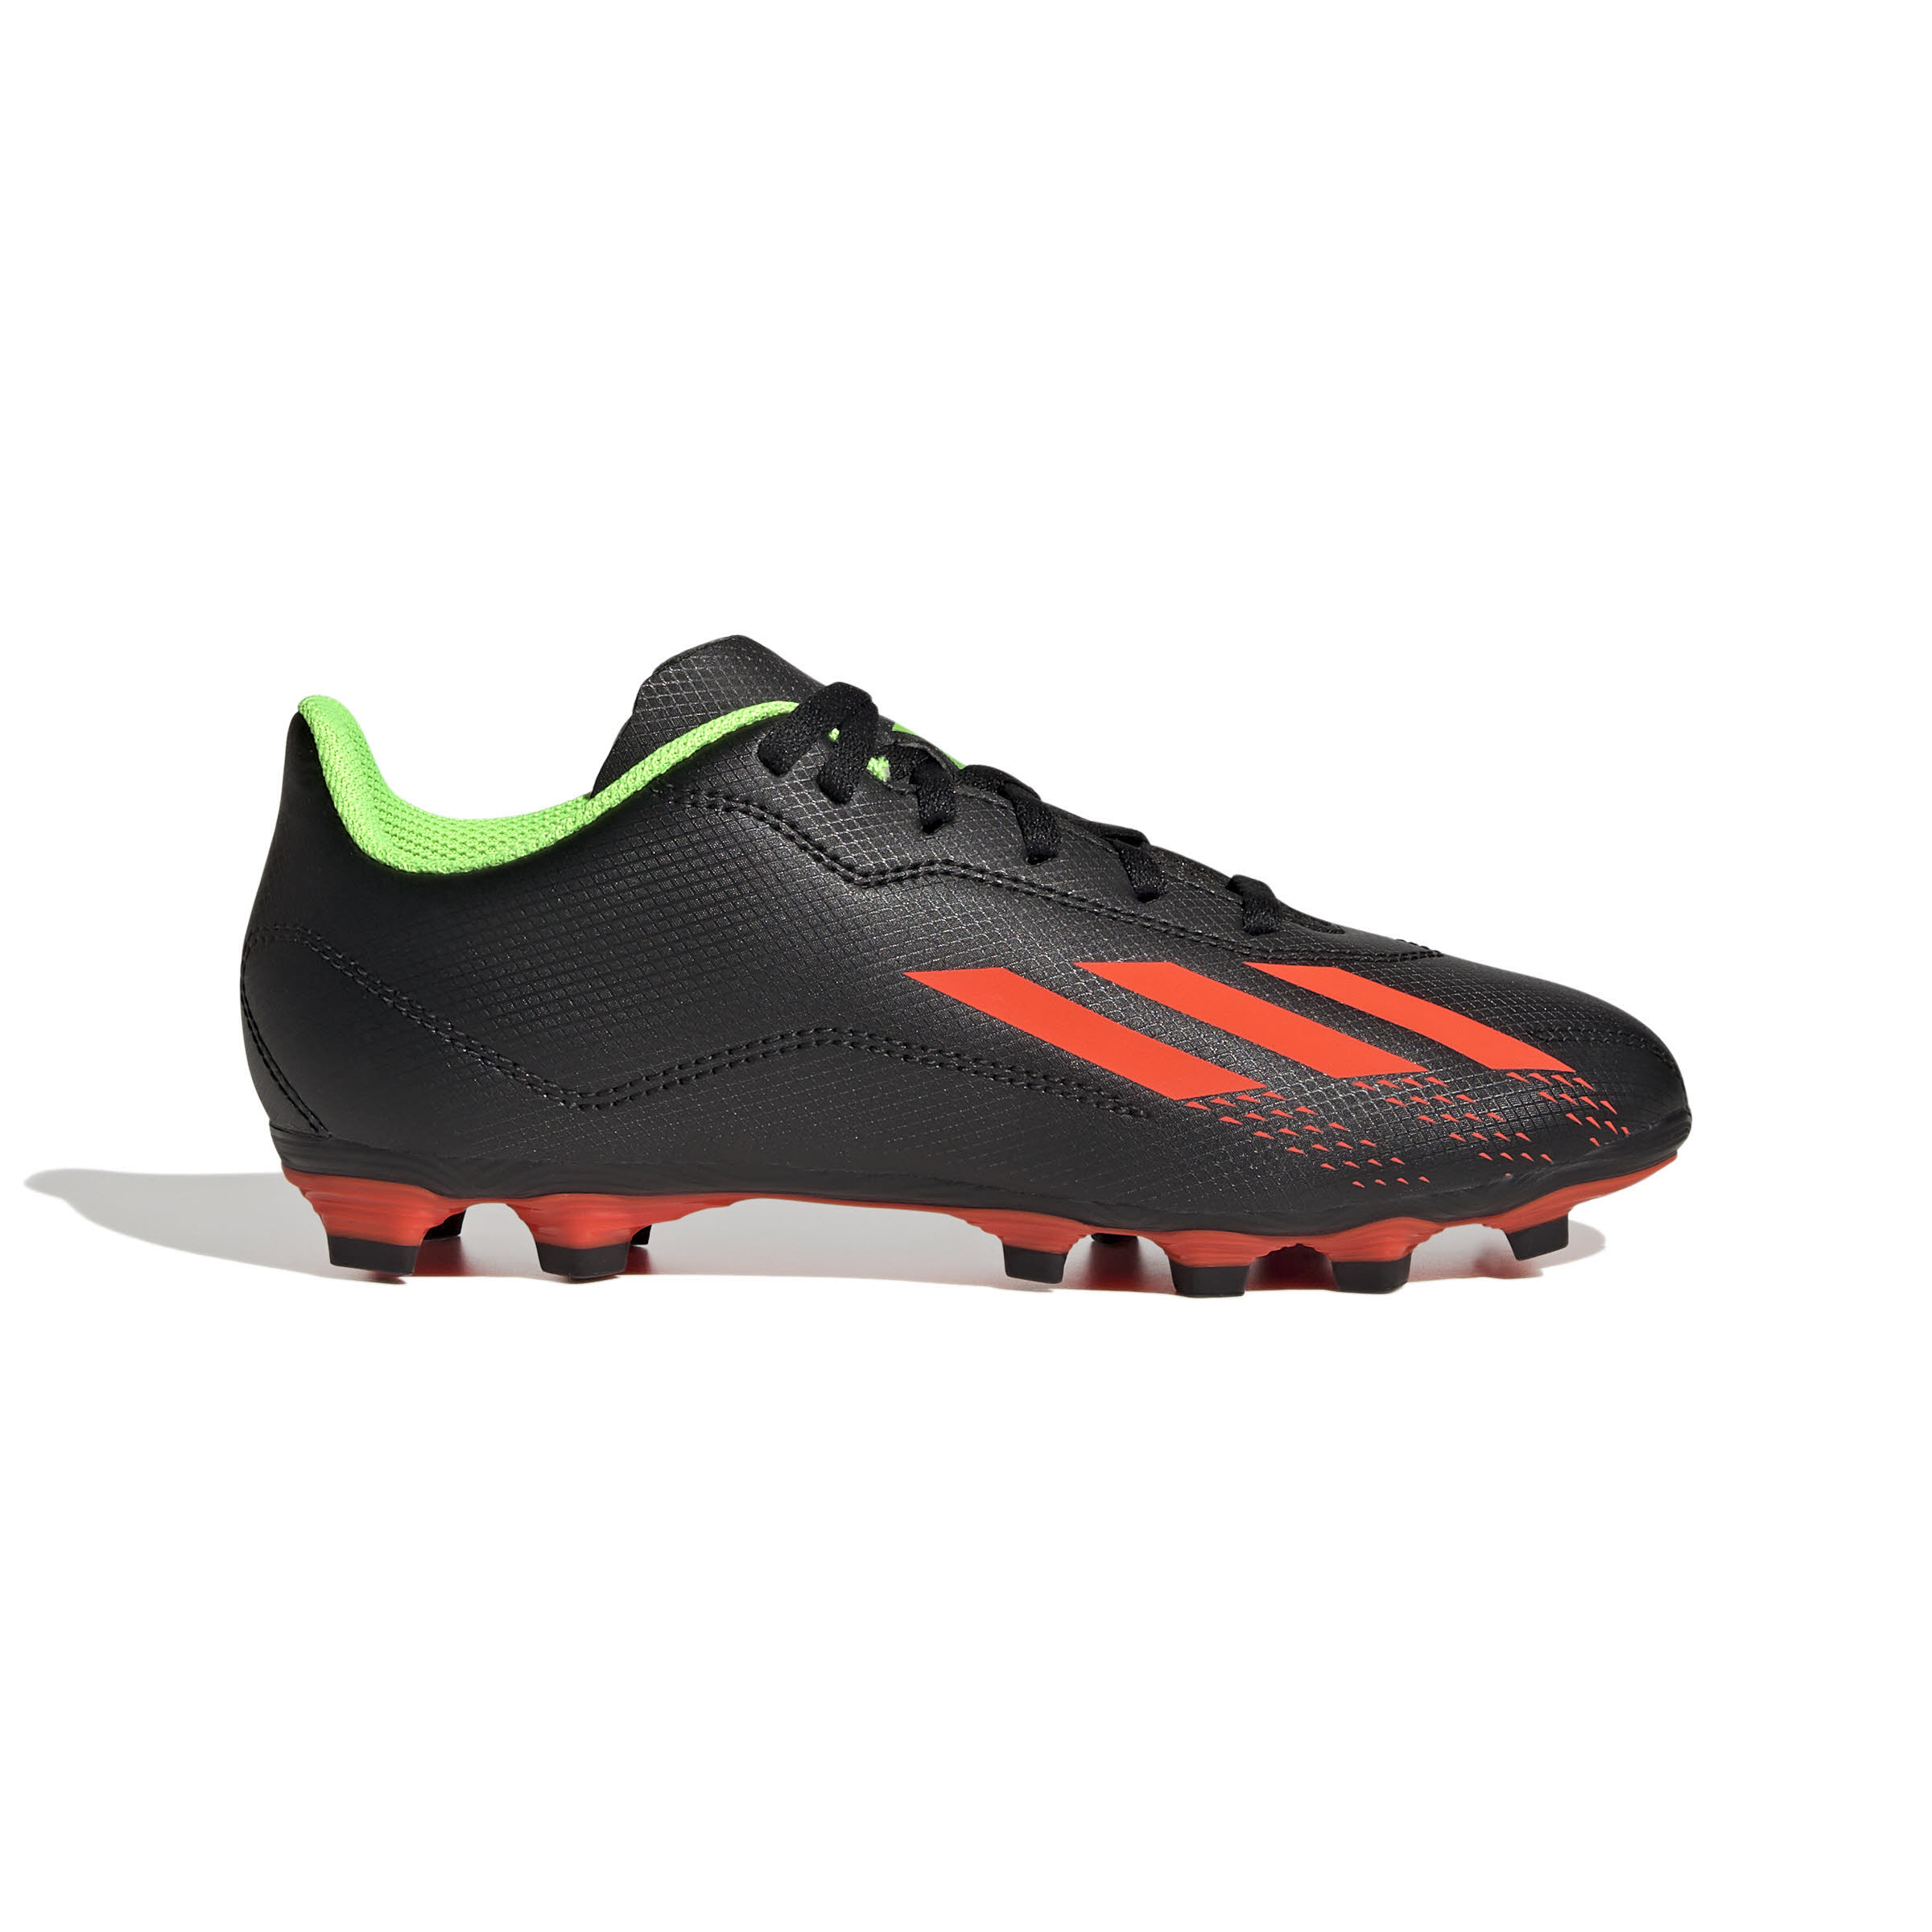 adidas X Speedportal.4 FxG Kinder Fußballschuhe Stollen schwarz/rot